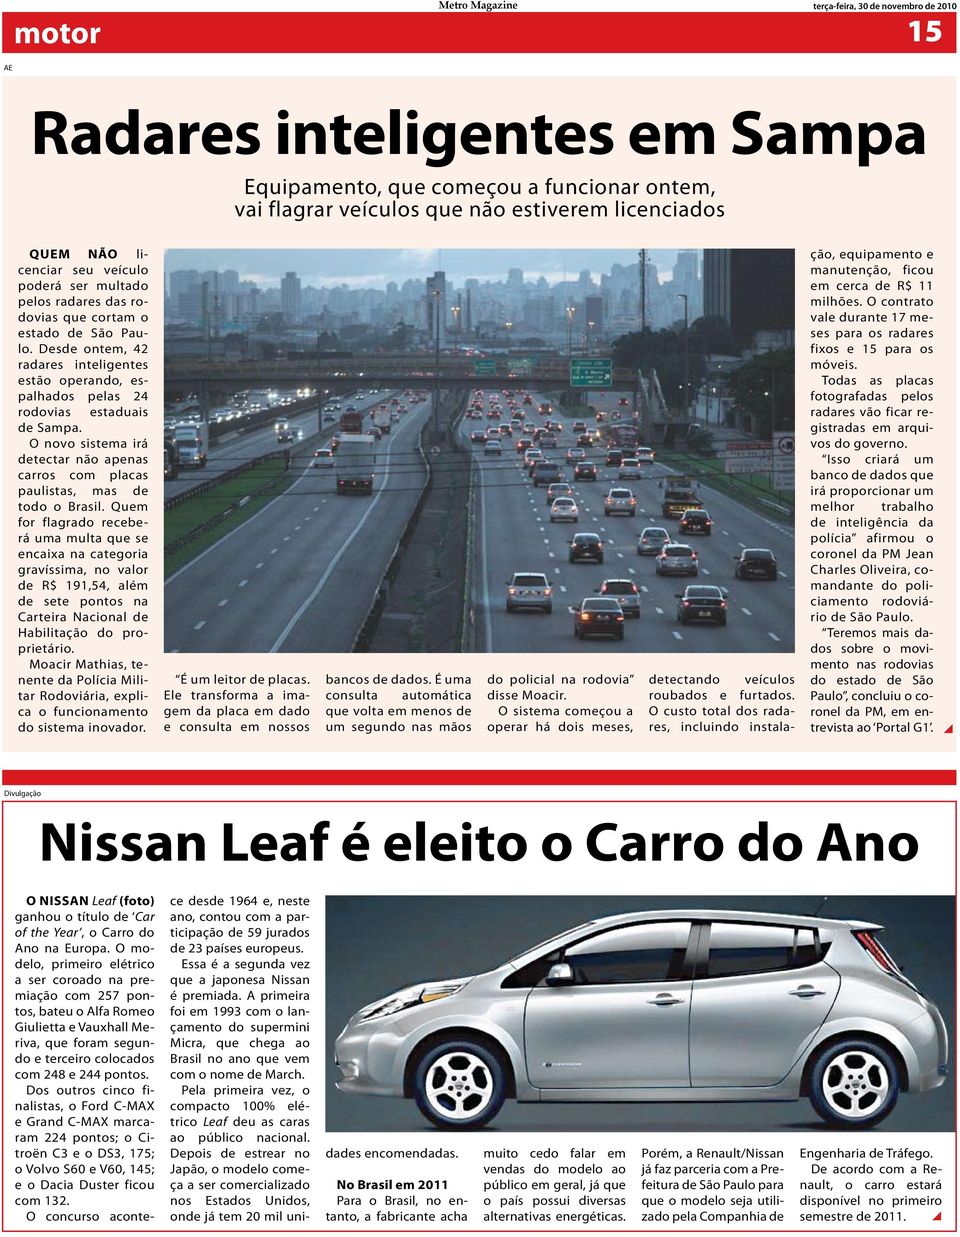 Desde ontem, 42 radares inteligentes estão operando, espalhados pelas 24 rodovias estaduais de Sampa. O novo sistema irá detectar não apenas carros com placas paulistas, mas de todo o Brasil.